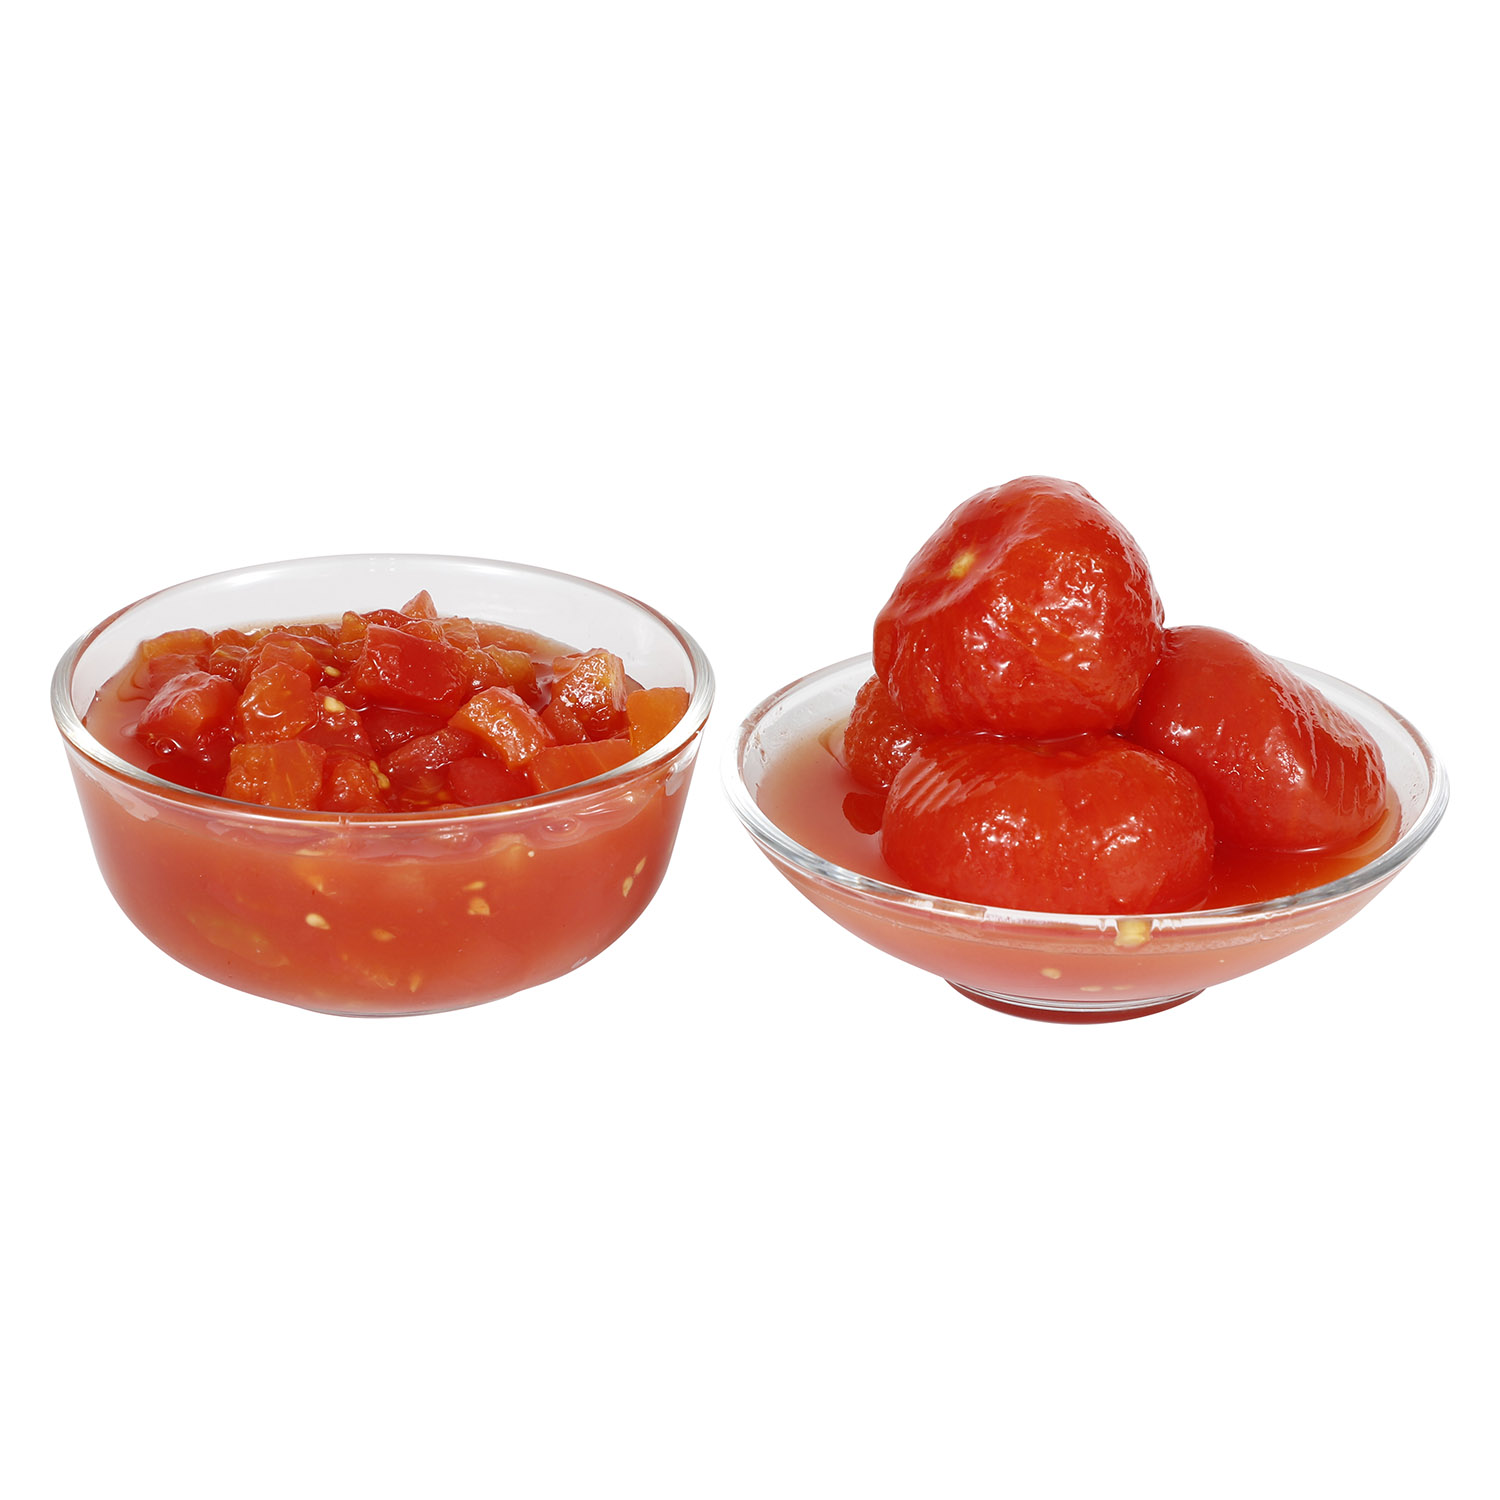 Whole Peeled Tomato & Diced Tomato